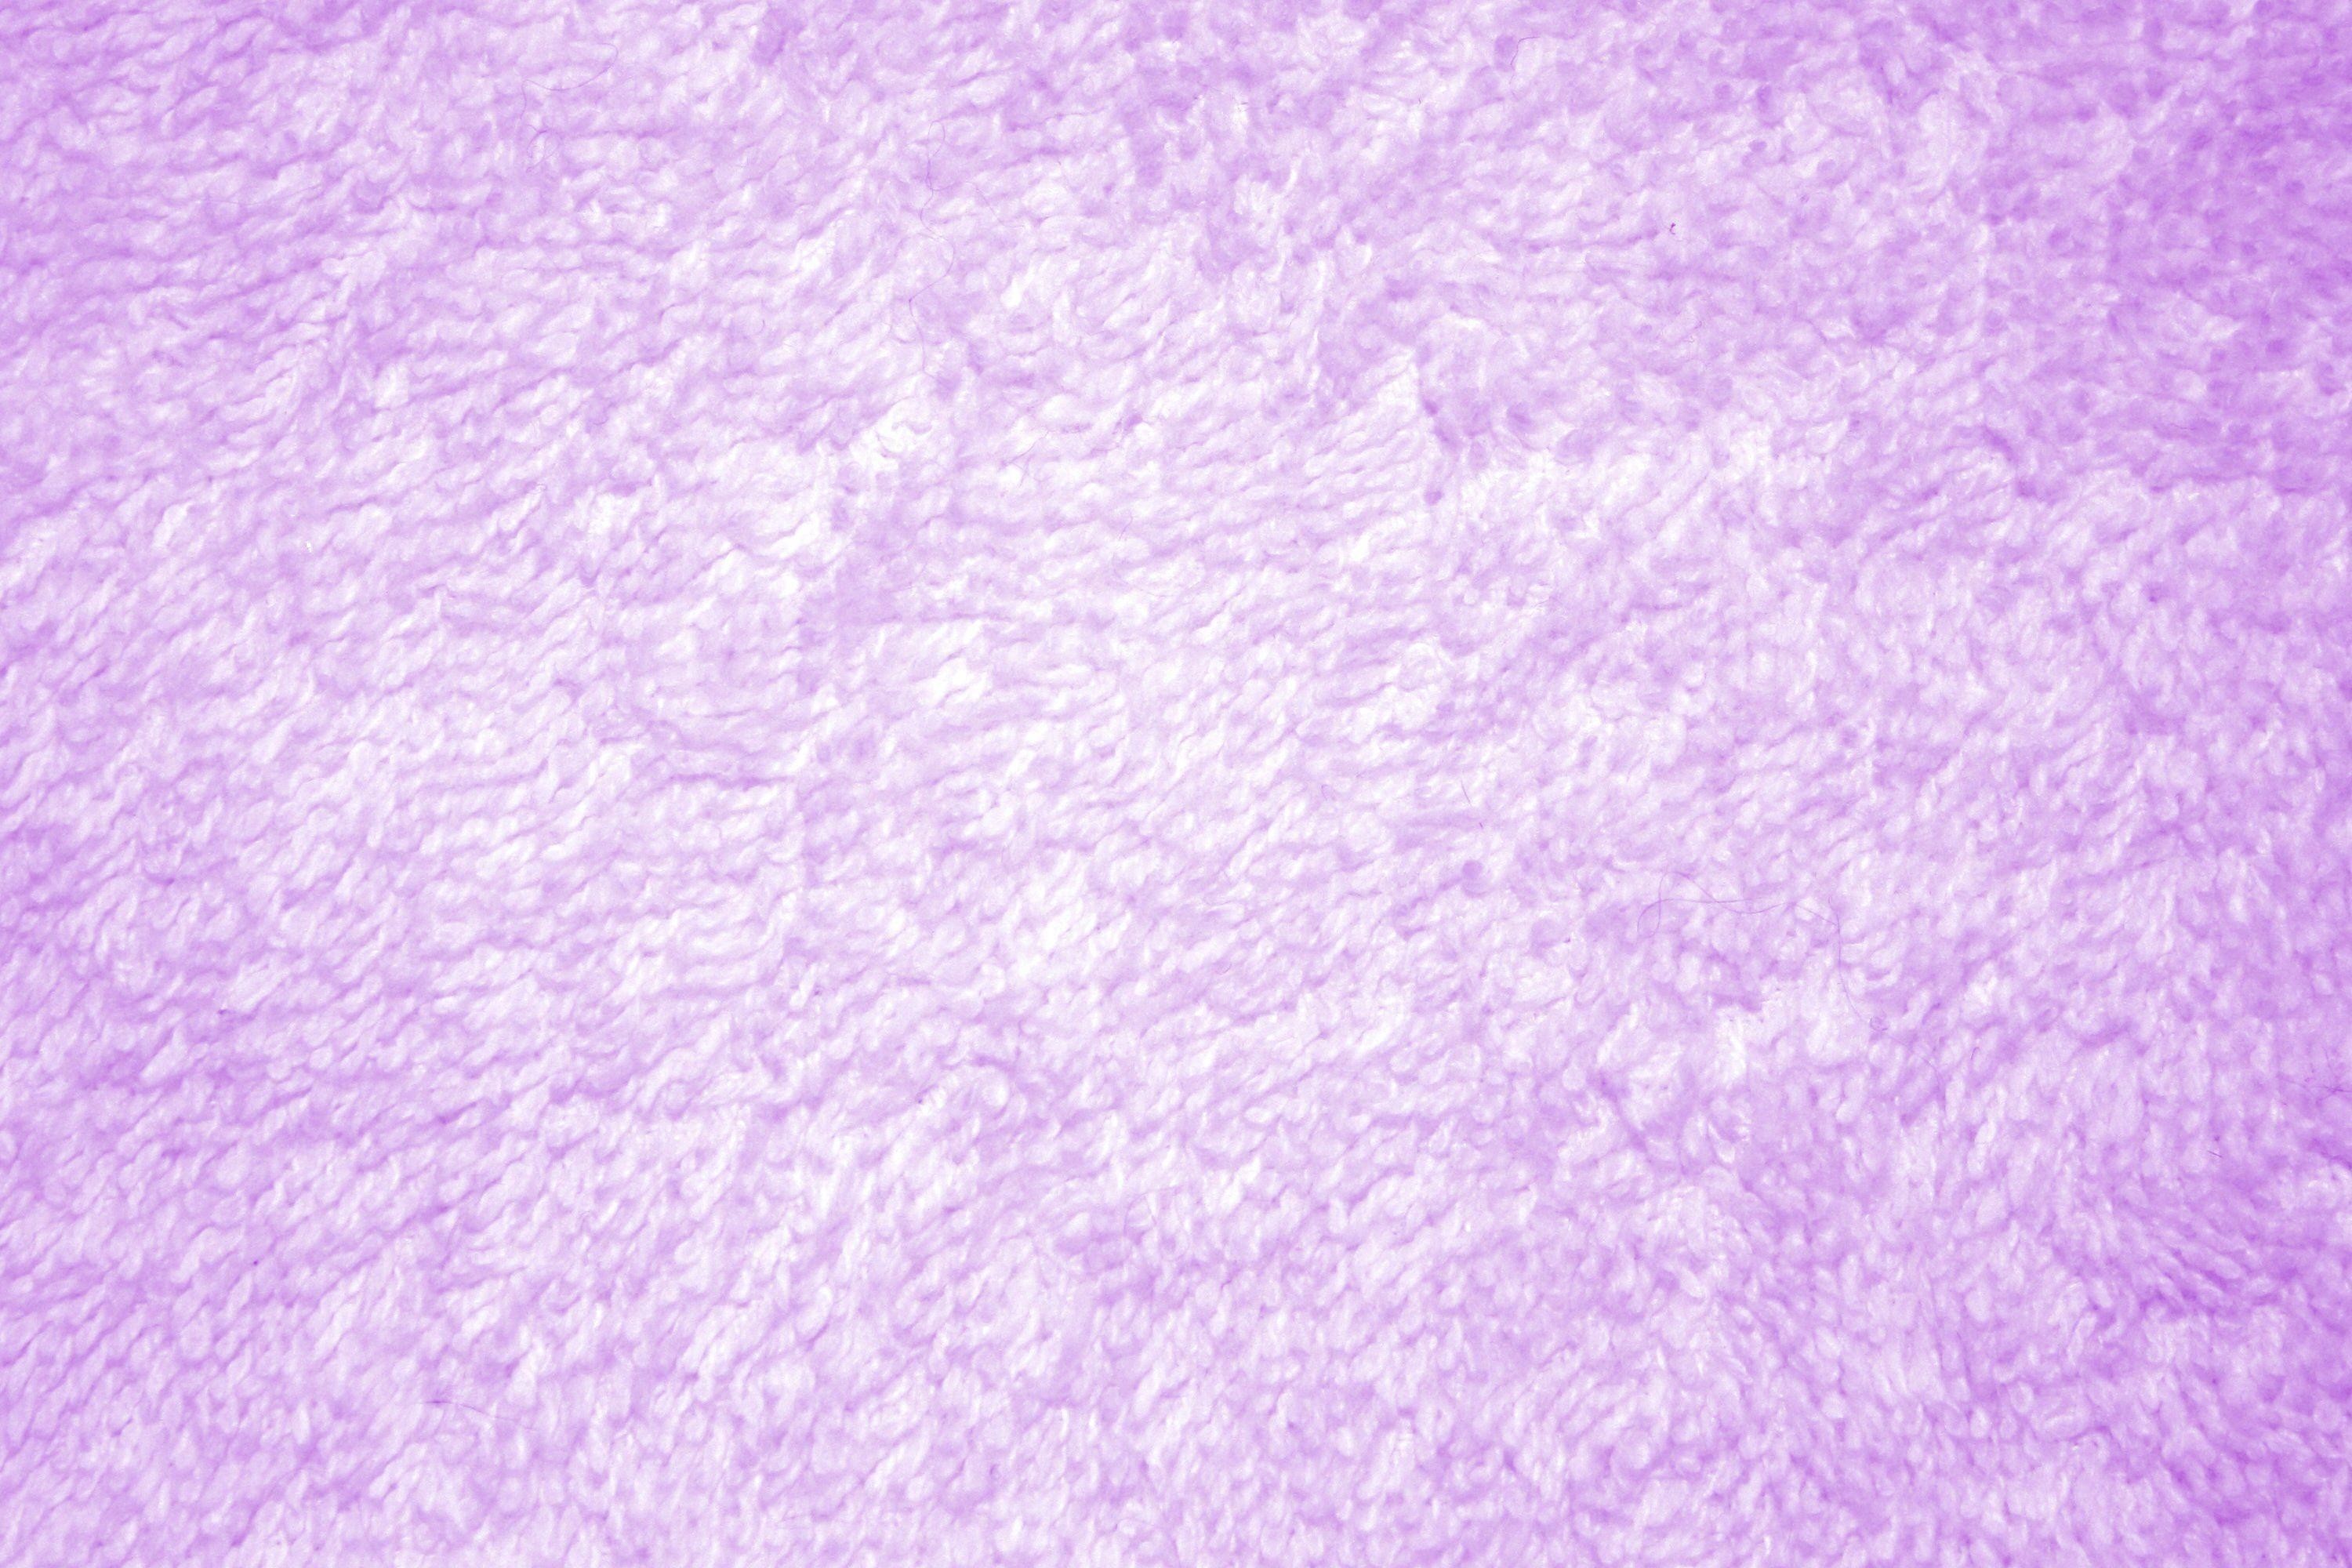 3000x2000 purple wallpaper tumblr #757675